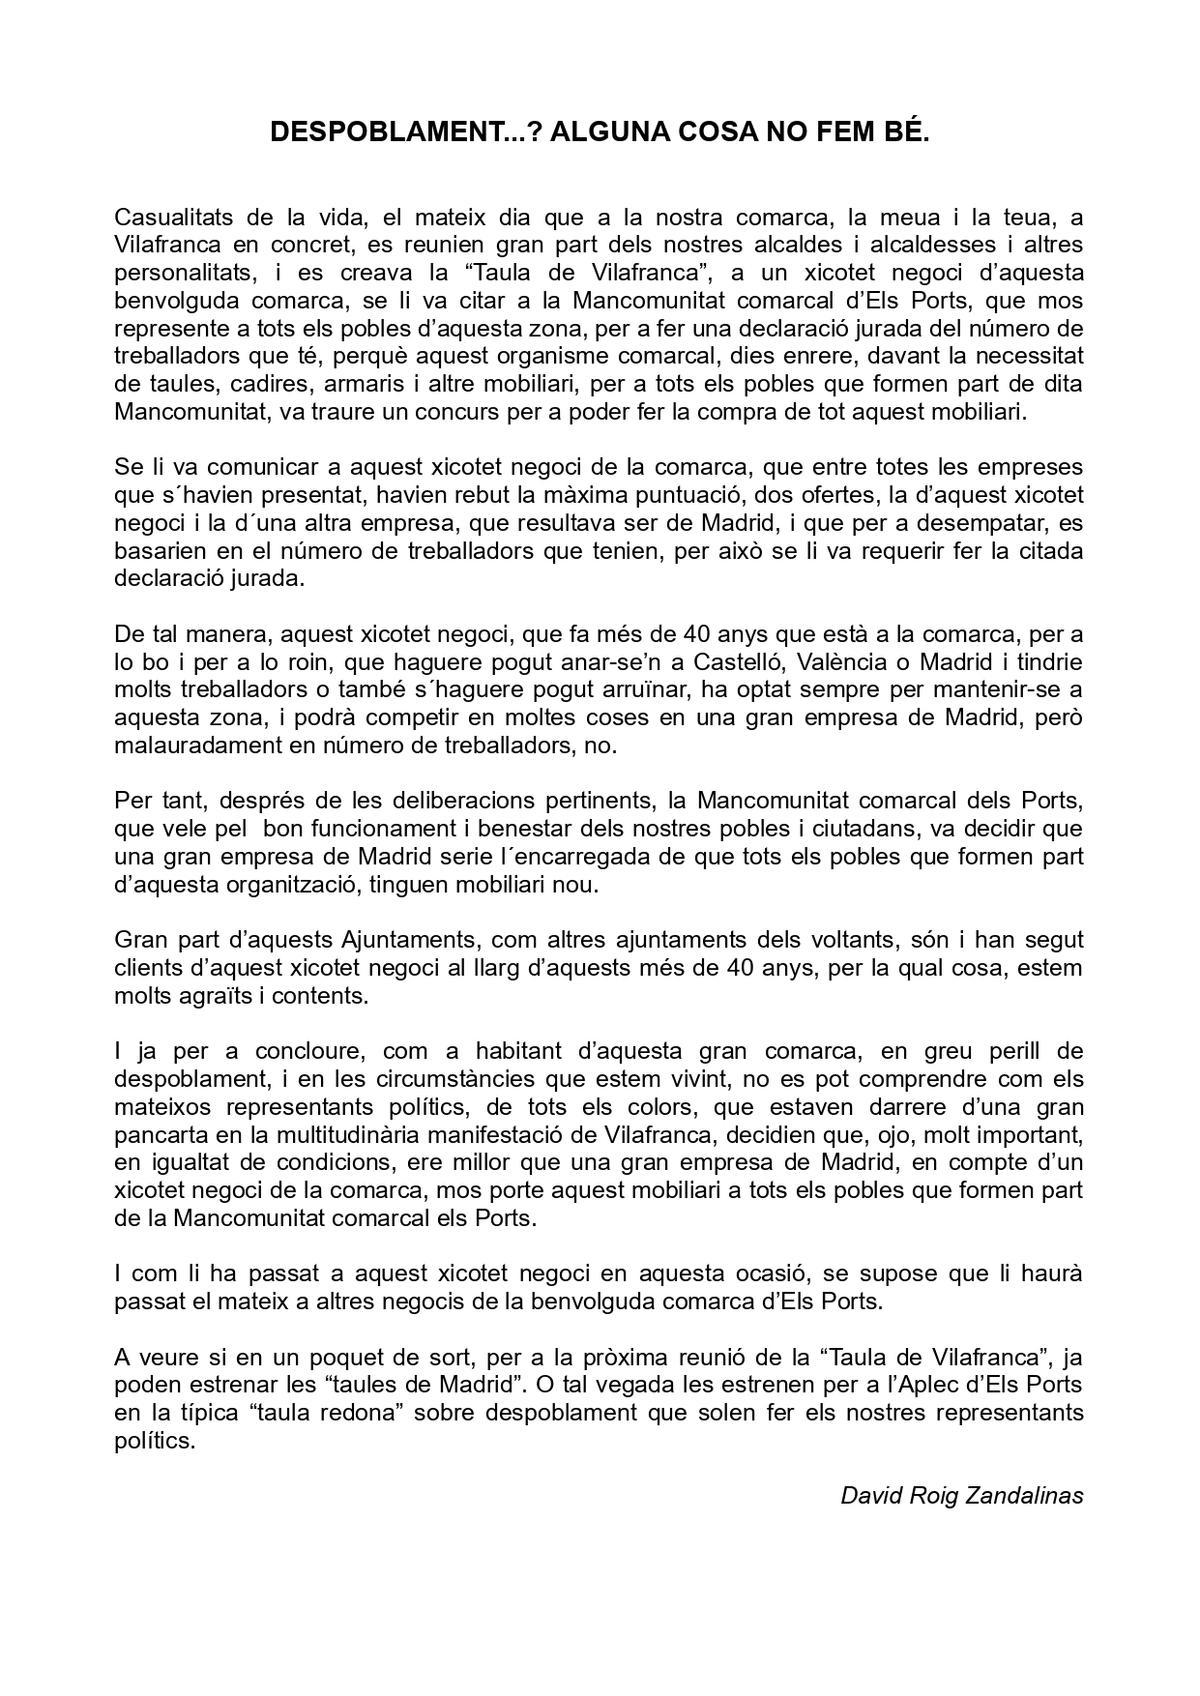 La carta íntegra redactada por el empresario de Vilafranca afectado.